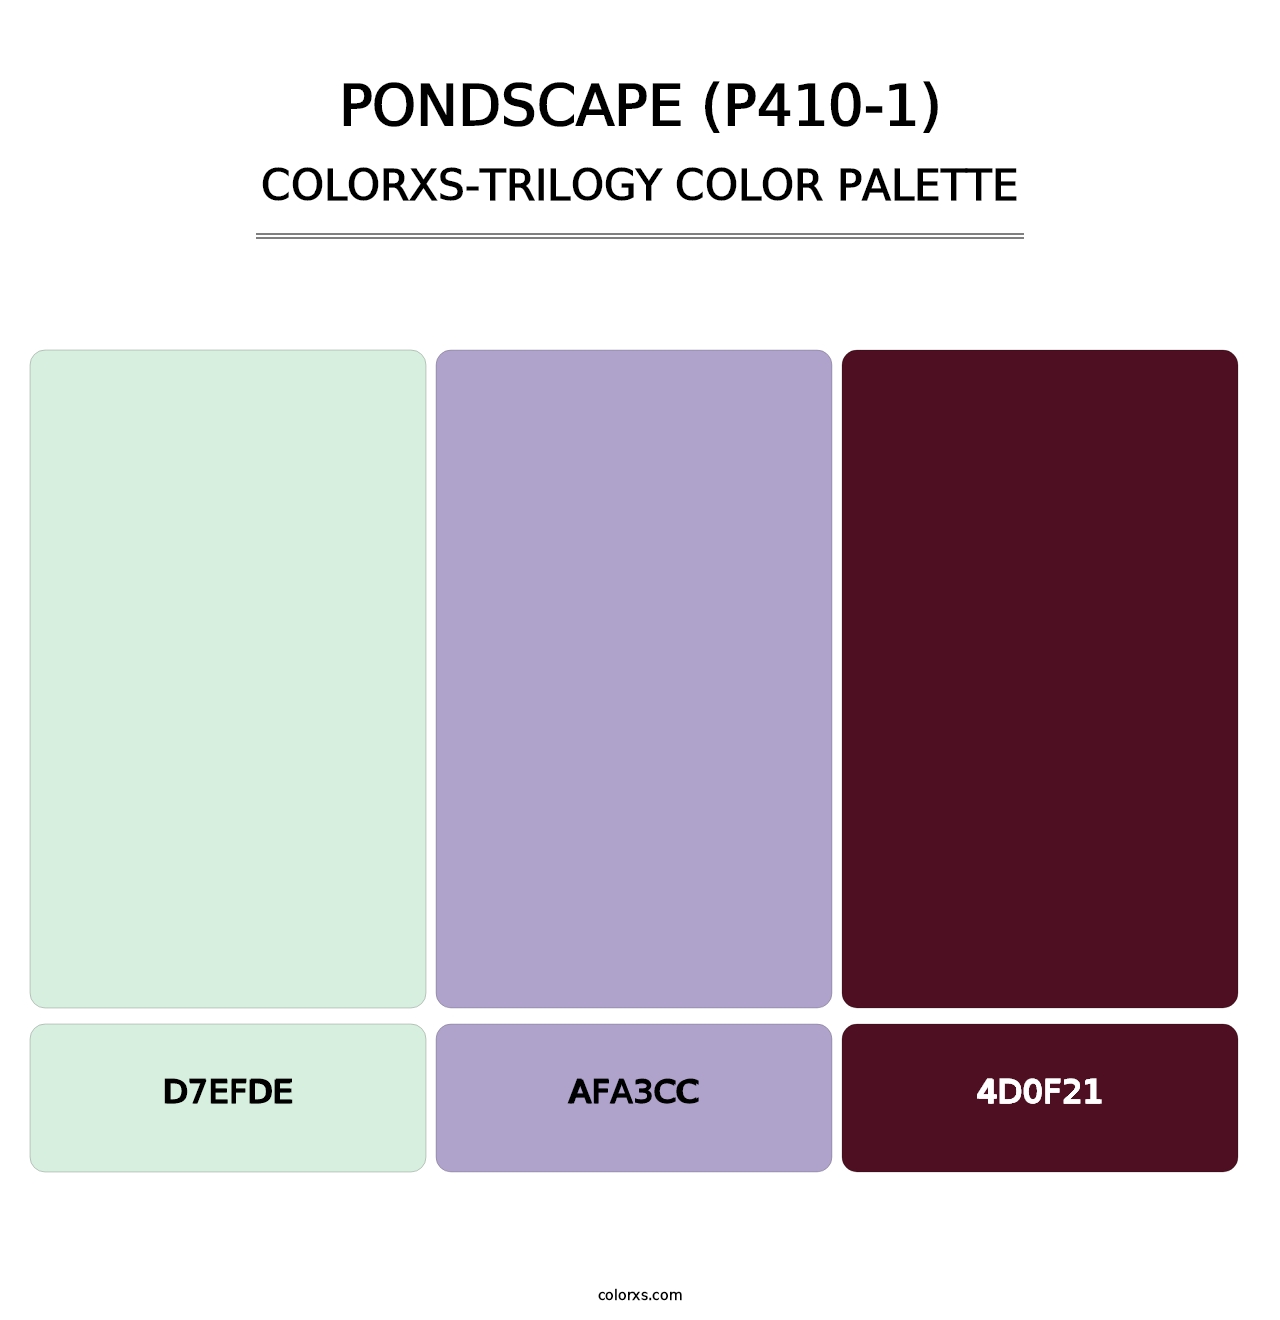 Pondscape (P410-1) - Colorxs Trilogy Palette